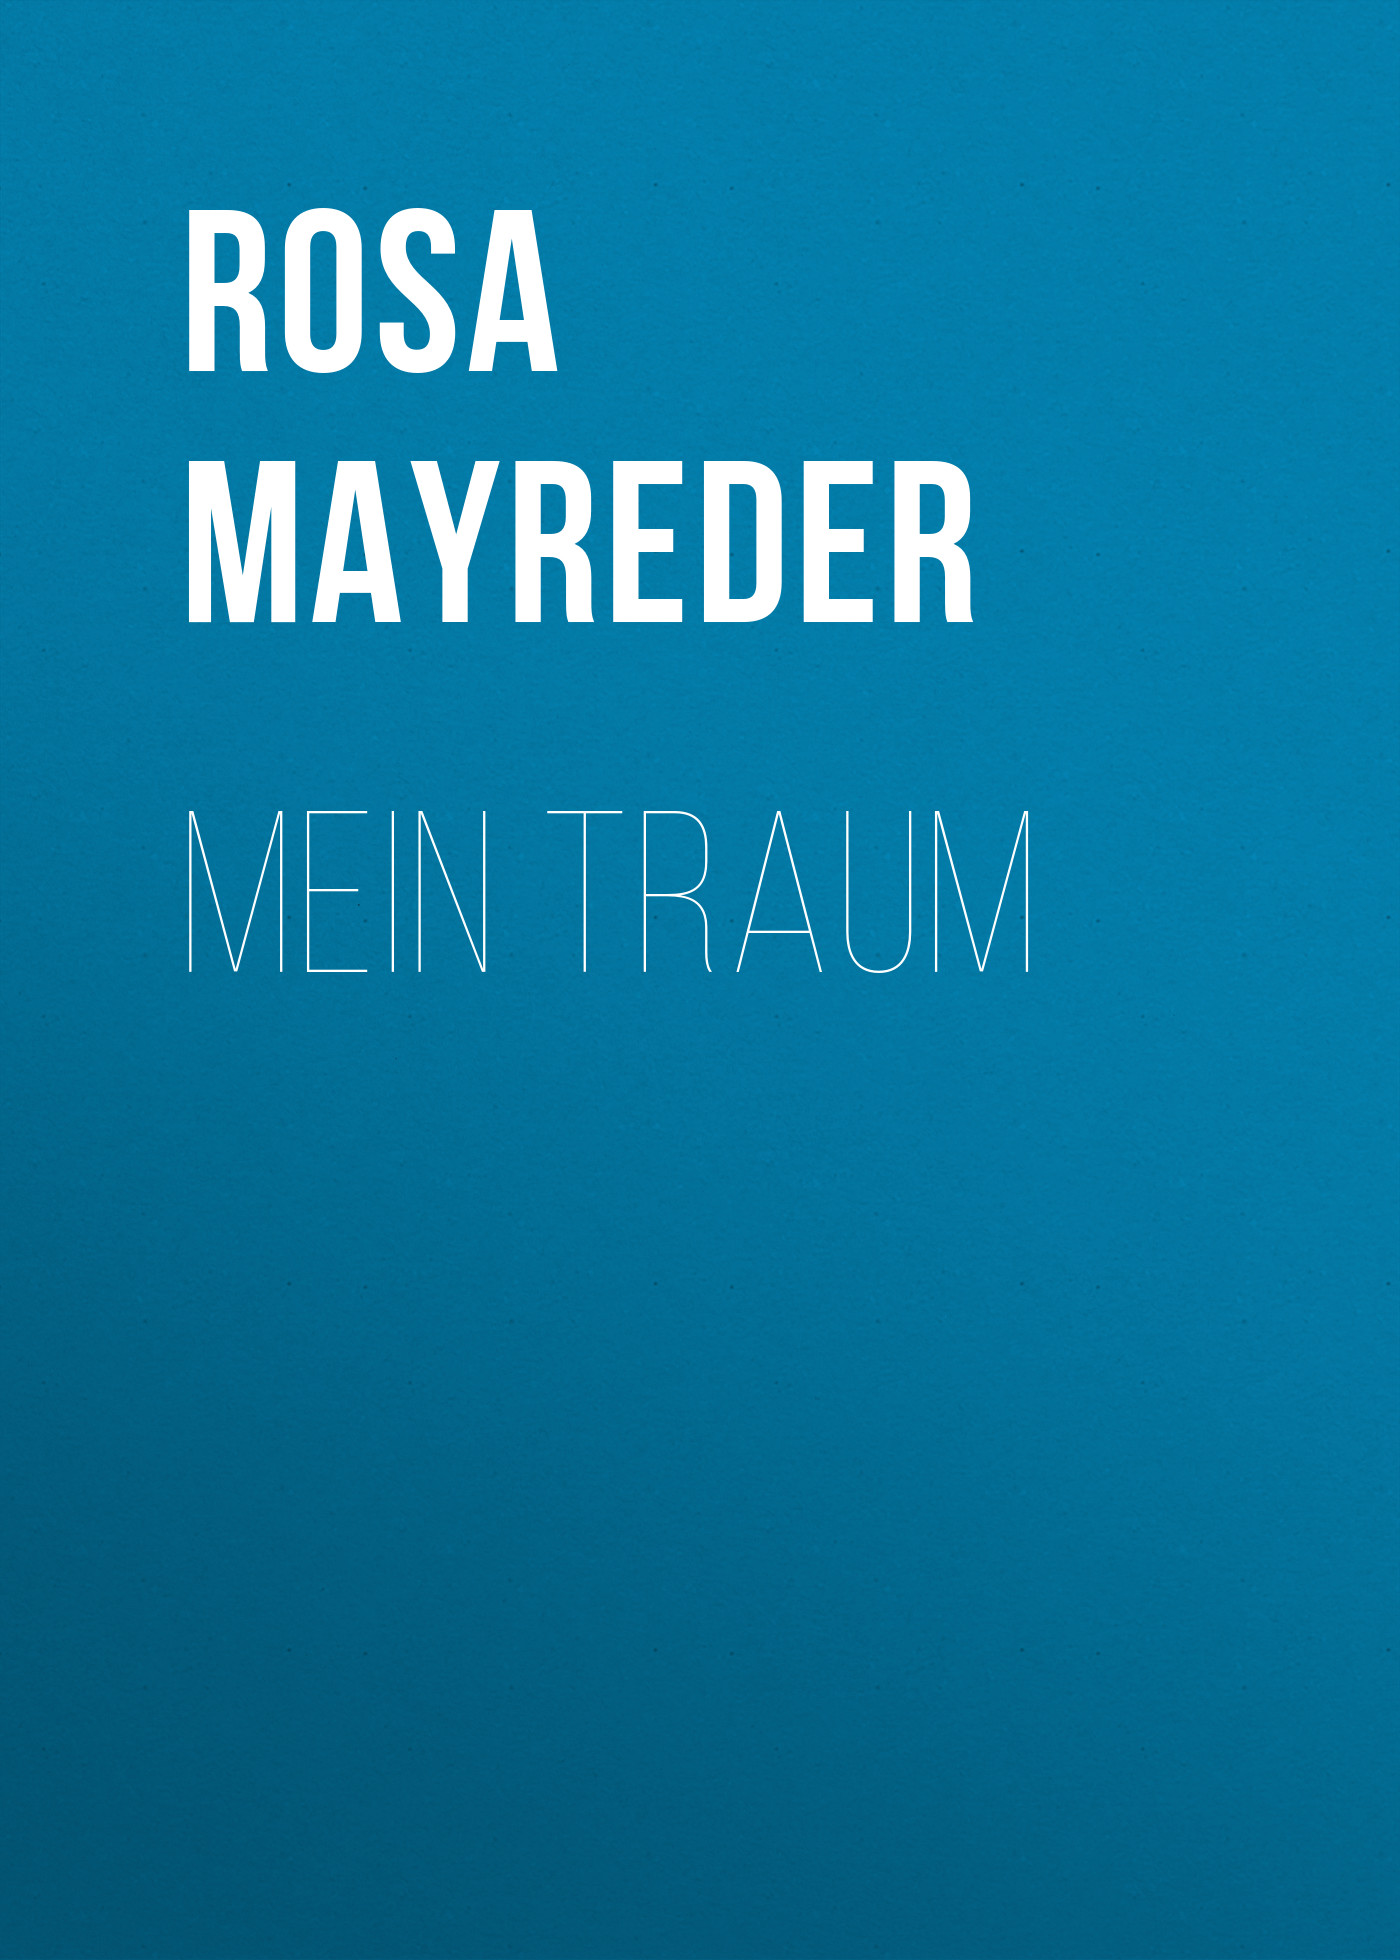 Книга Mein Traum из серии , созданная Rosa Mayreder, может относится к жанру Зарубежная классика. Стоимость электронной книги Mein Traum с идентификатором 48634196 составляет 0 руб.